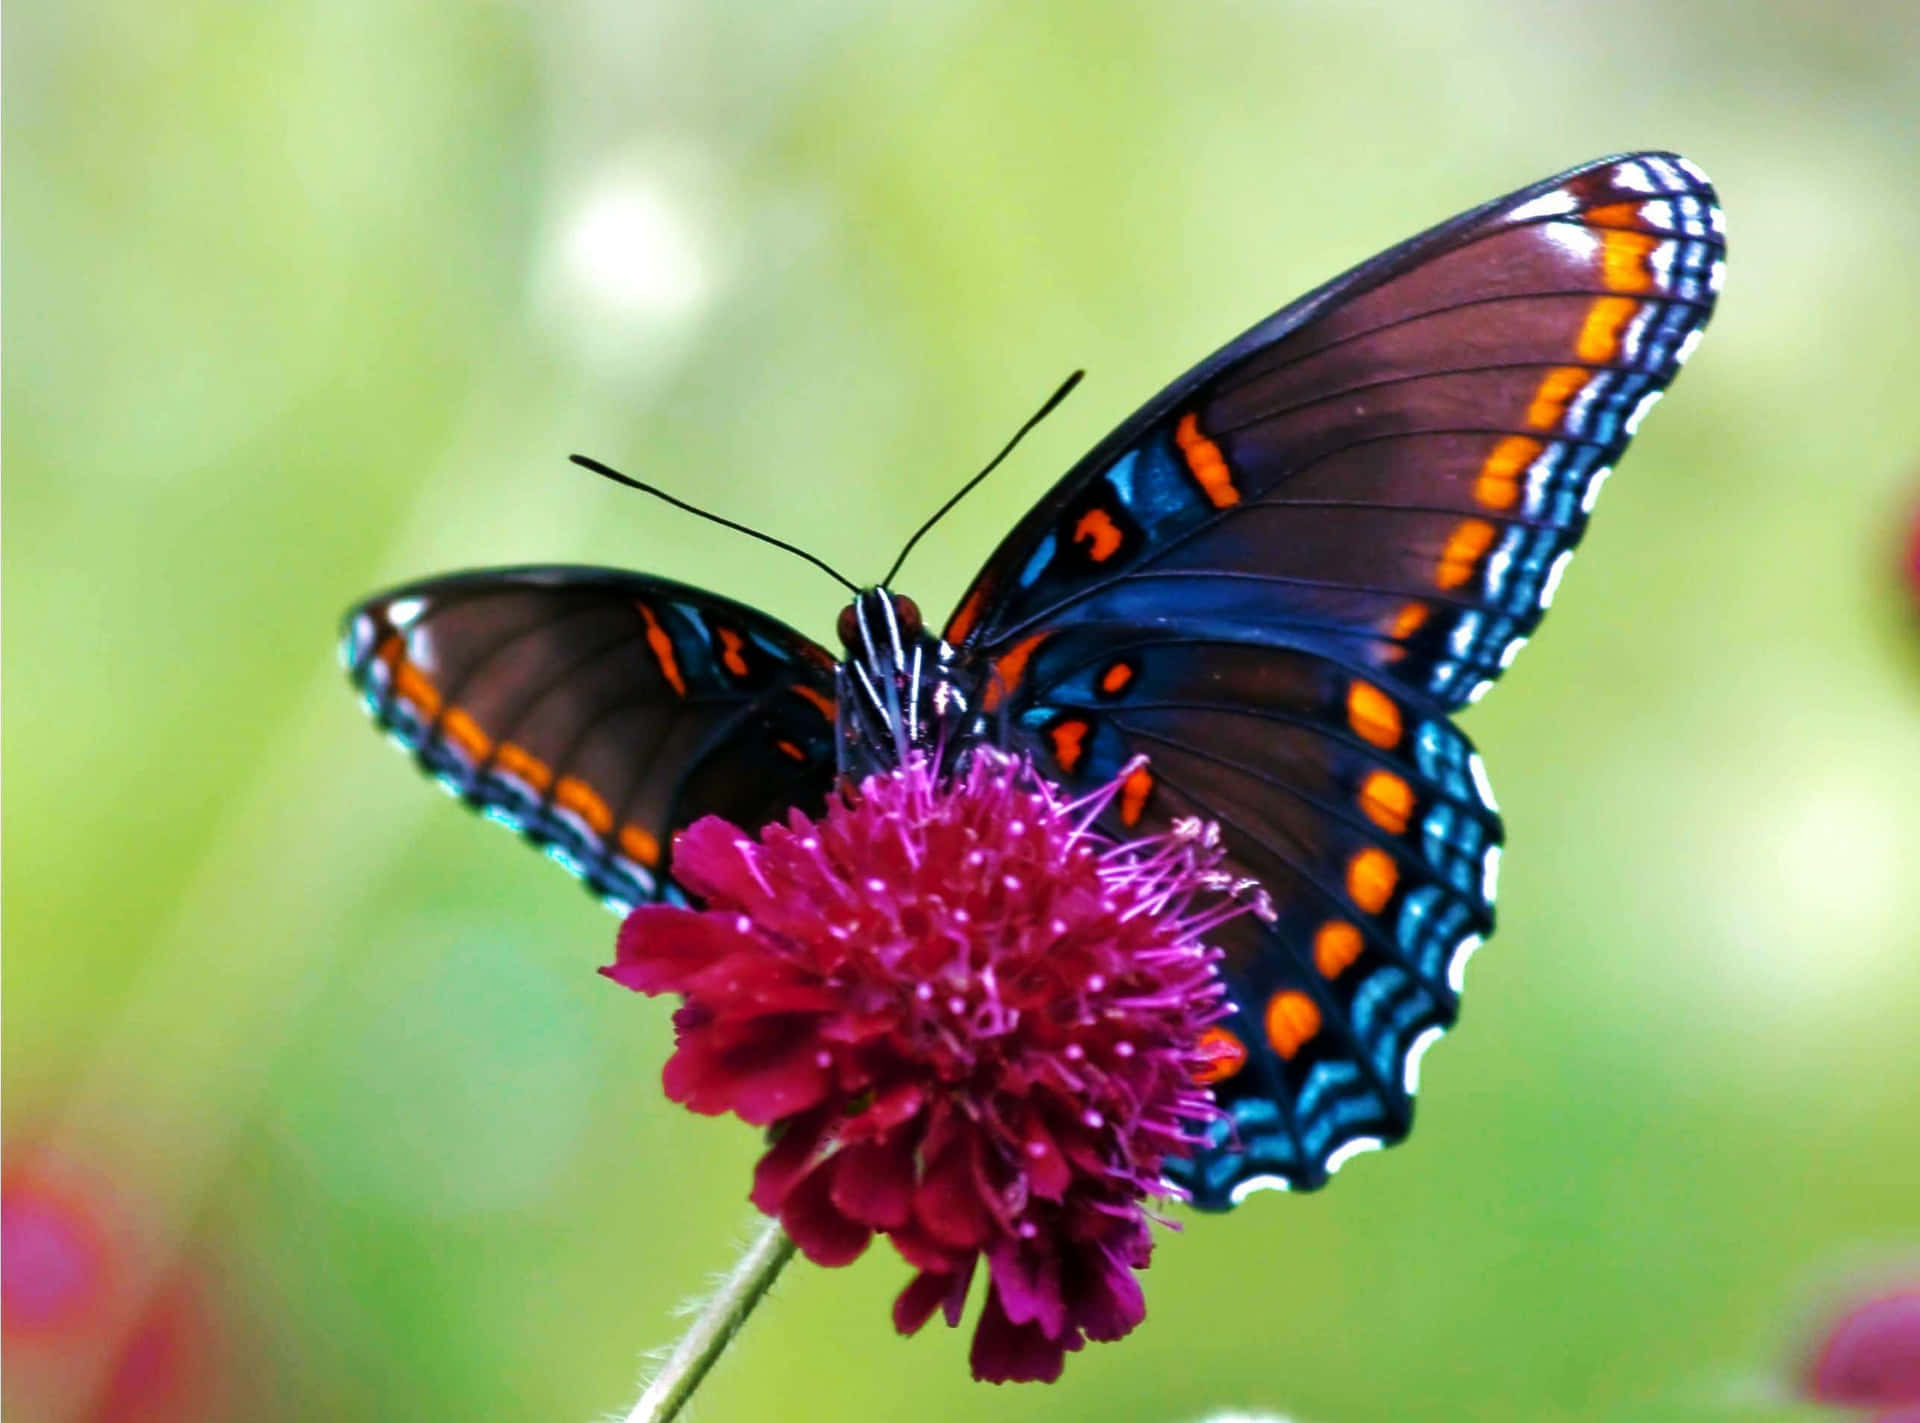 Einwunderschöner Schmetterling Breitete Seine Flügel In Einem Lebendigen Blumengarten Aus.